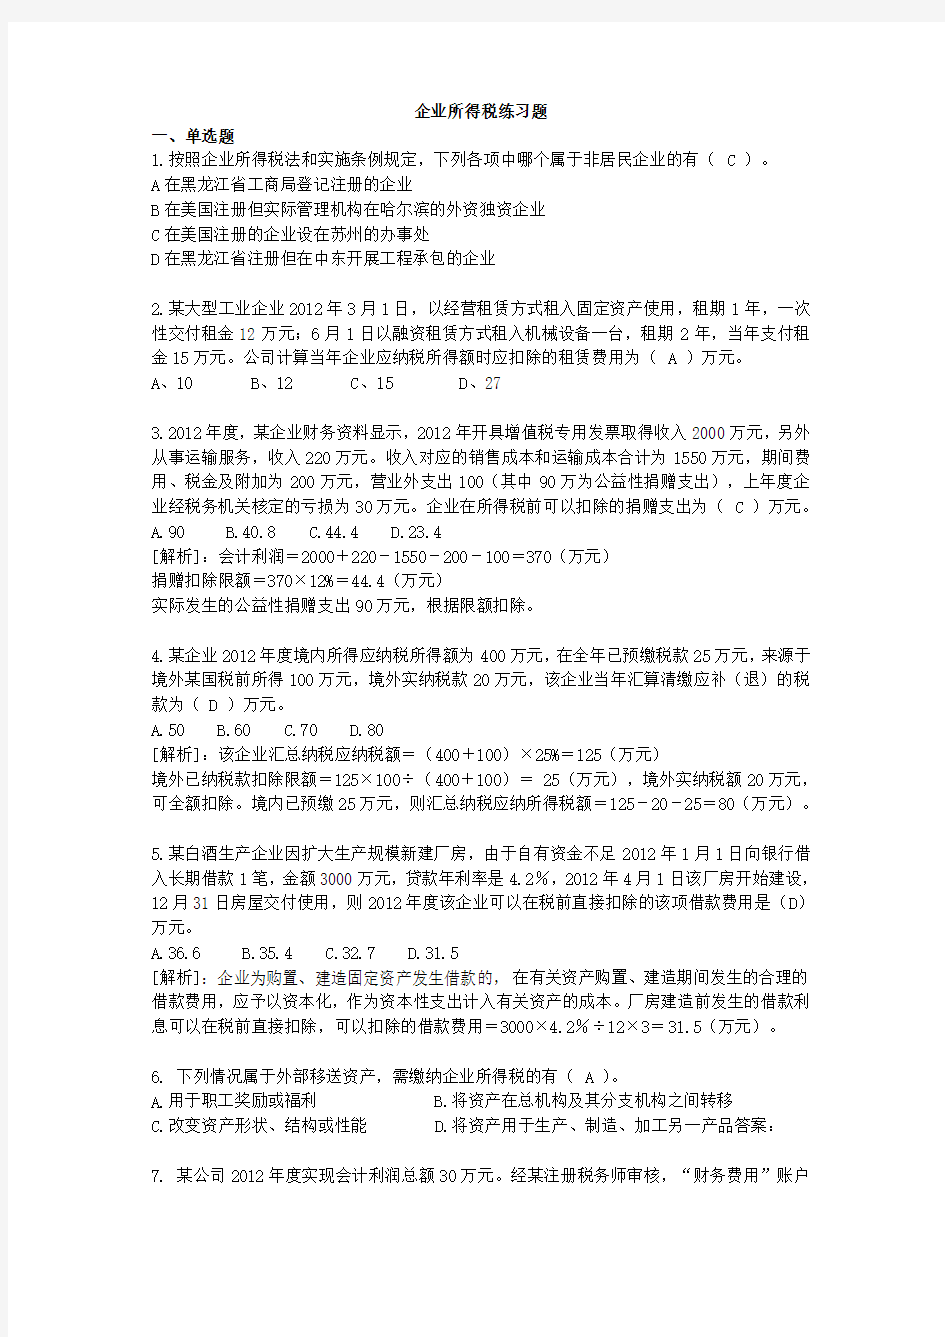 2013企业所得税练习题(答案).